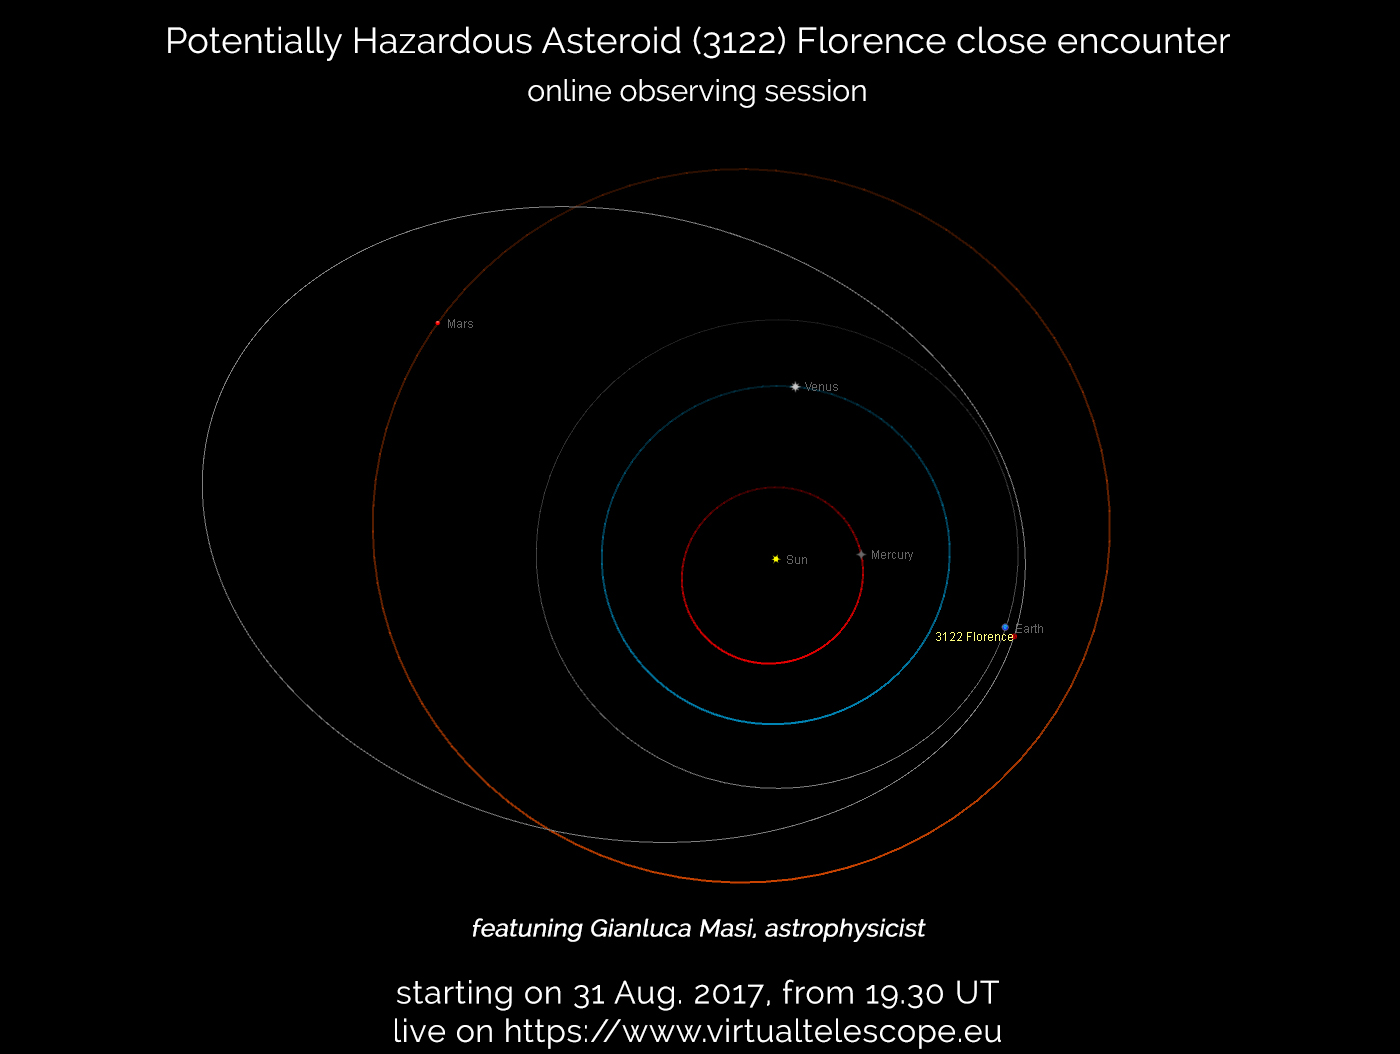 Incontro ravvicinato con l'Asteroide Potenizialmente Pericoloso 3122 Florence: evento online - 31 Aug. 2017